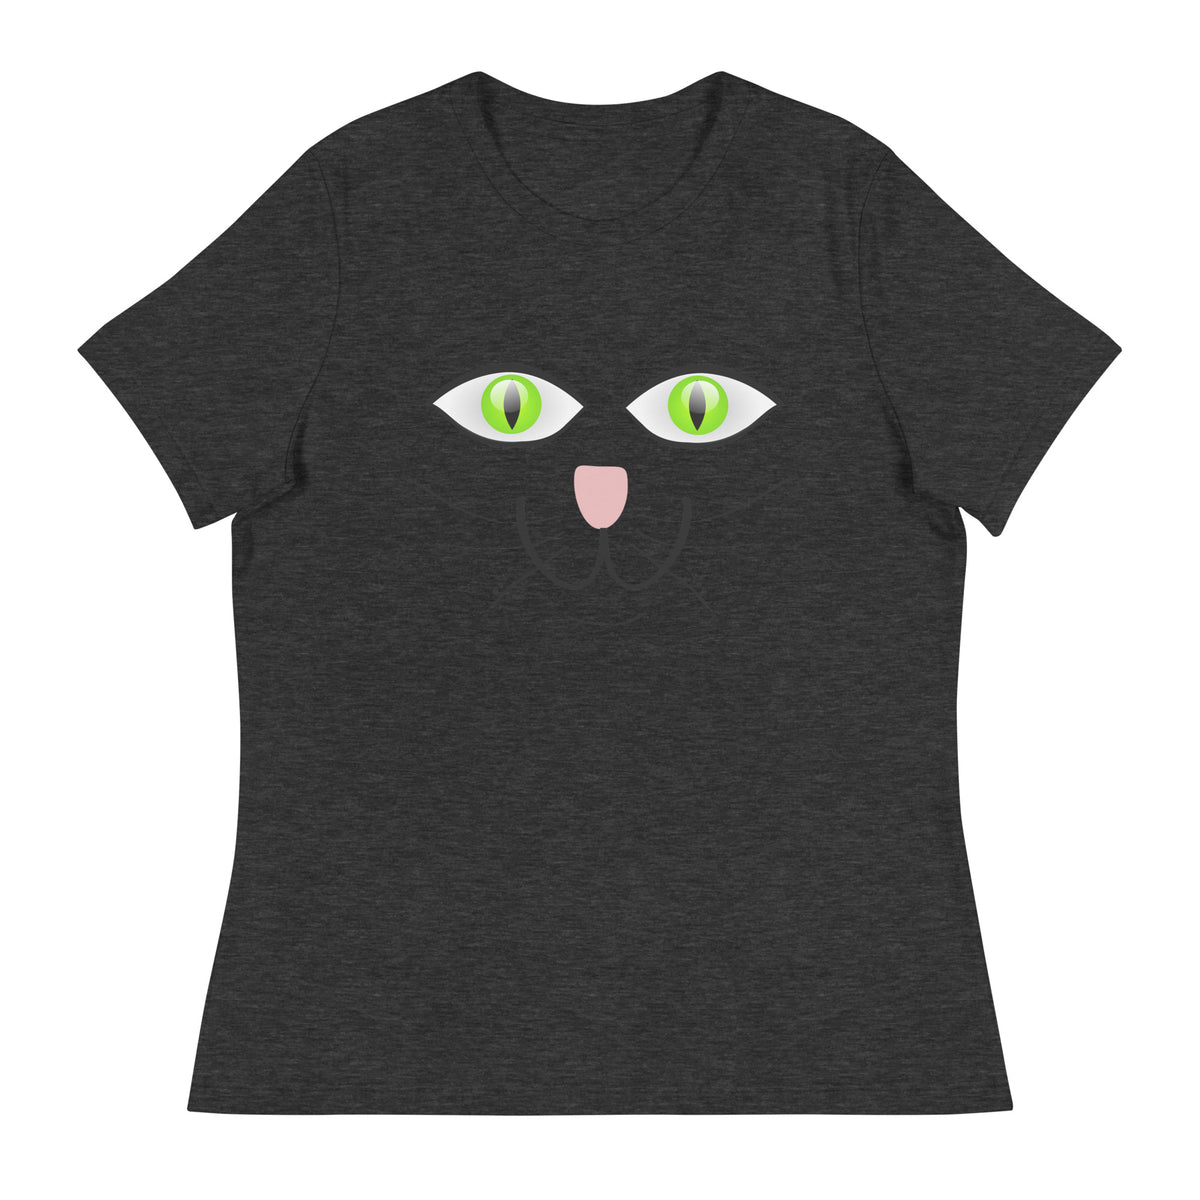 Cat Green Eyes T-Shirt